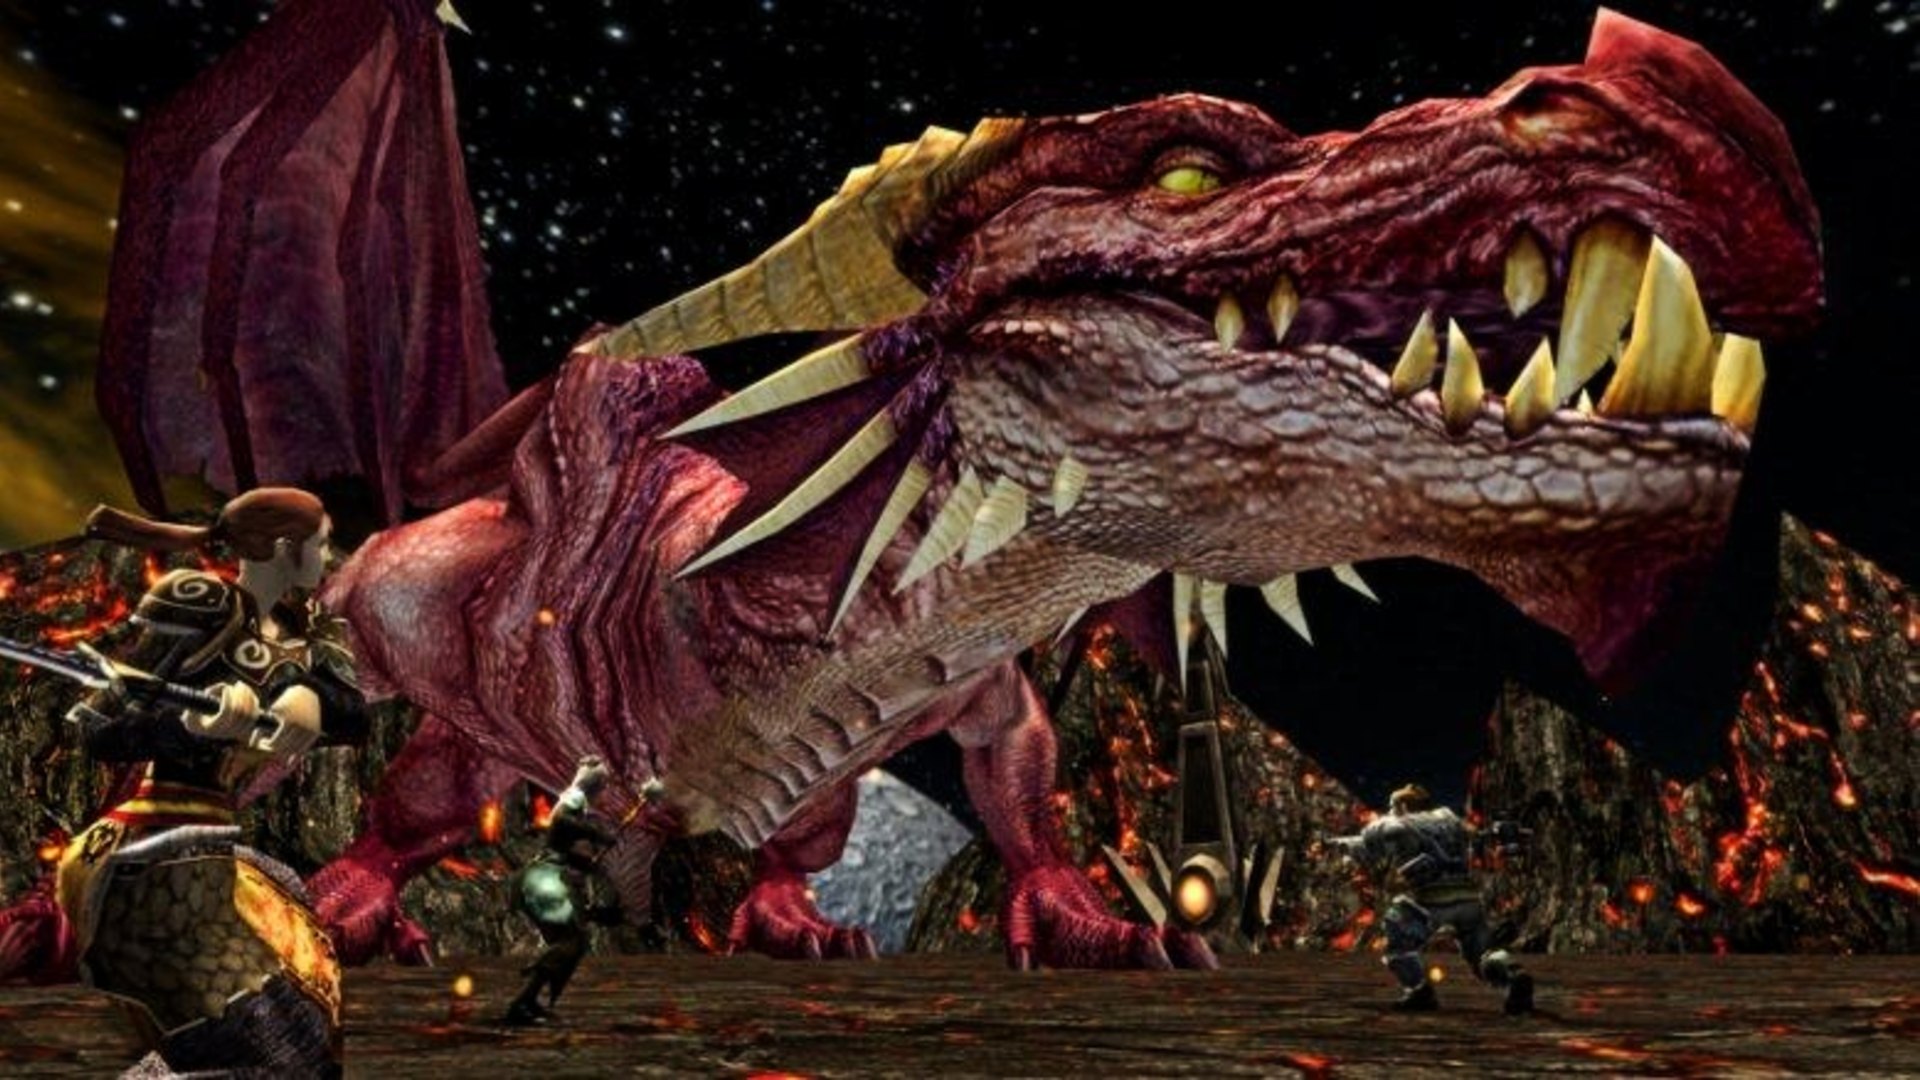 Migliori giochi per PC gratuiti: D&D online. L'immagine mostra un grande drago combattuto da un gruppo di guerrieri